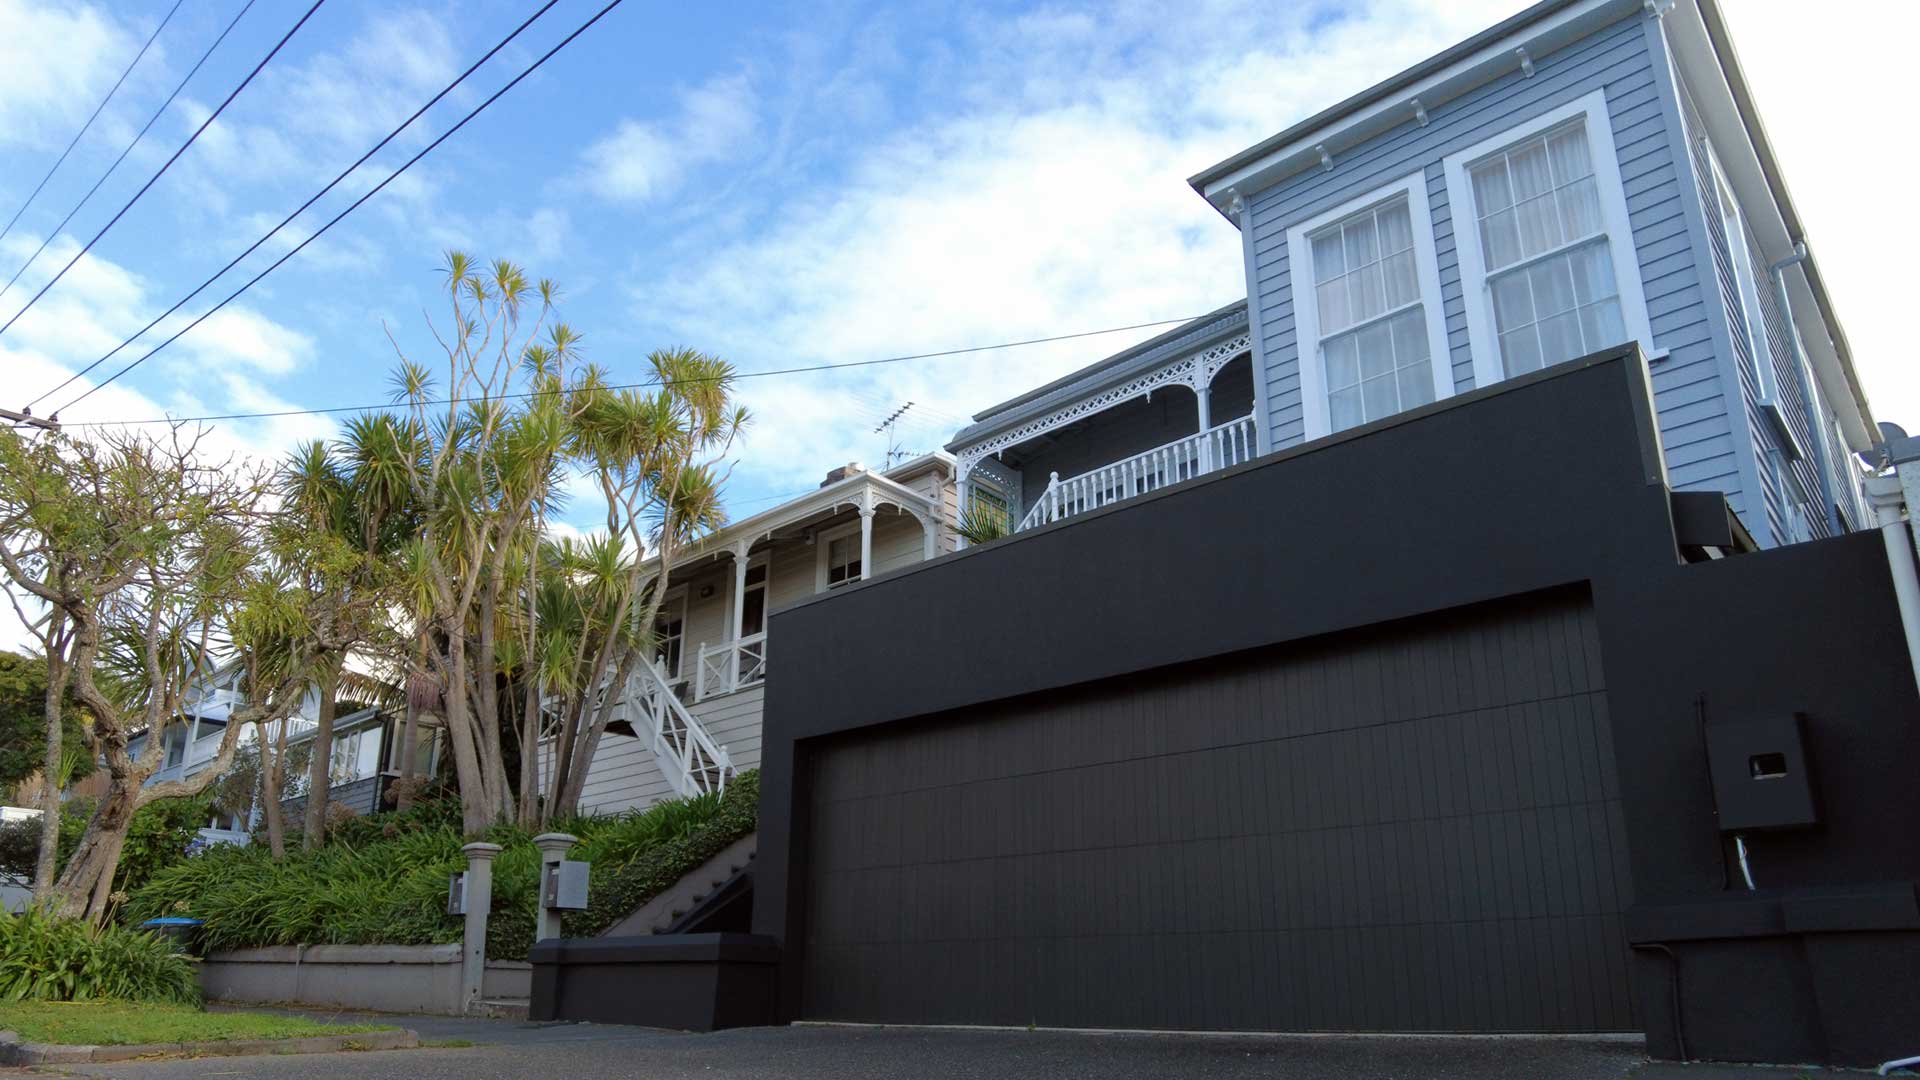 house with dark garage